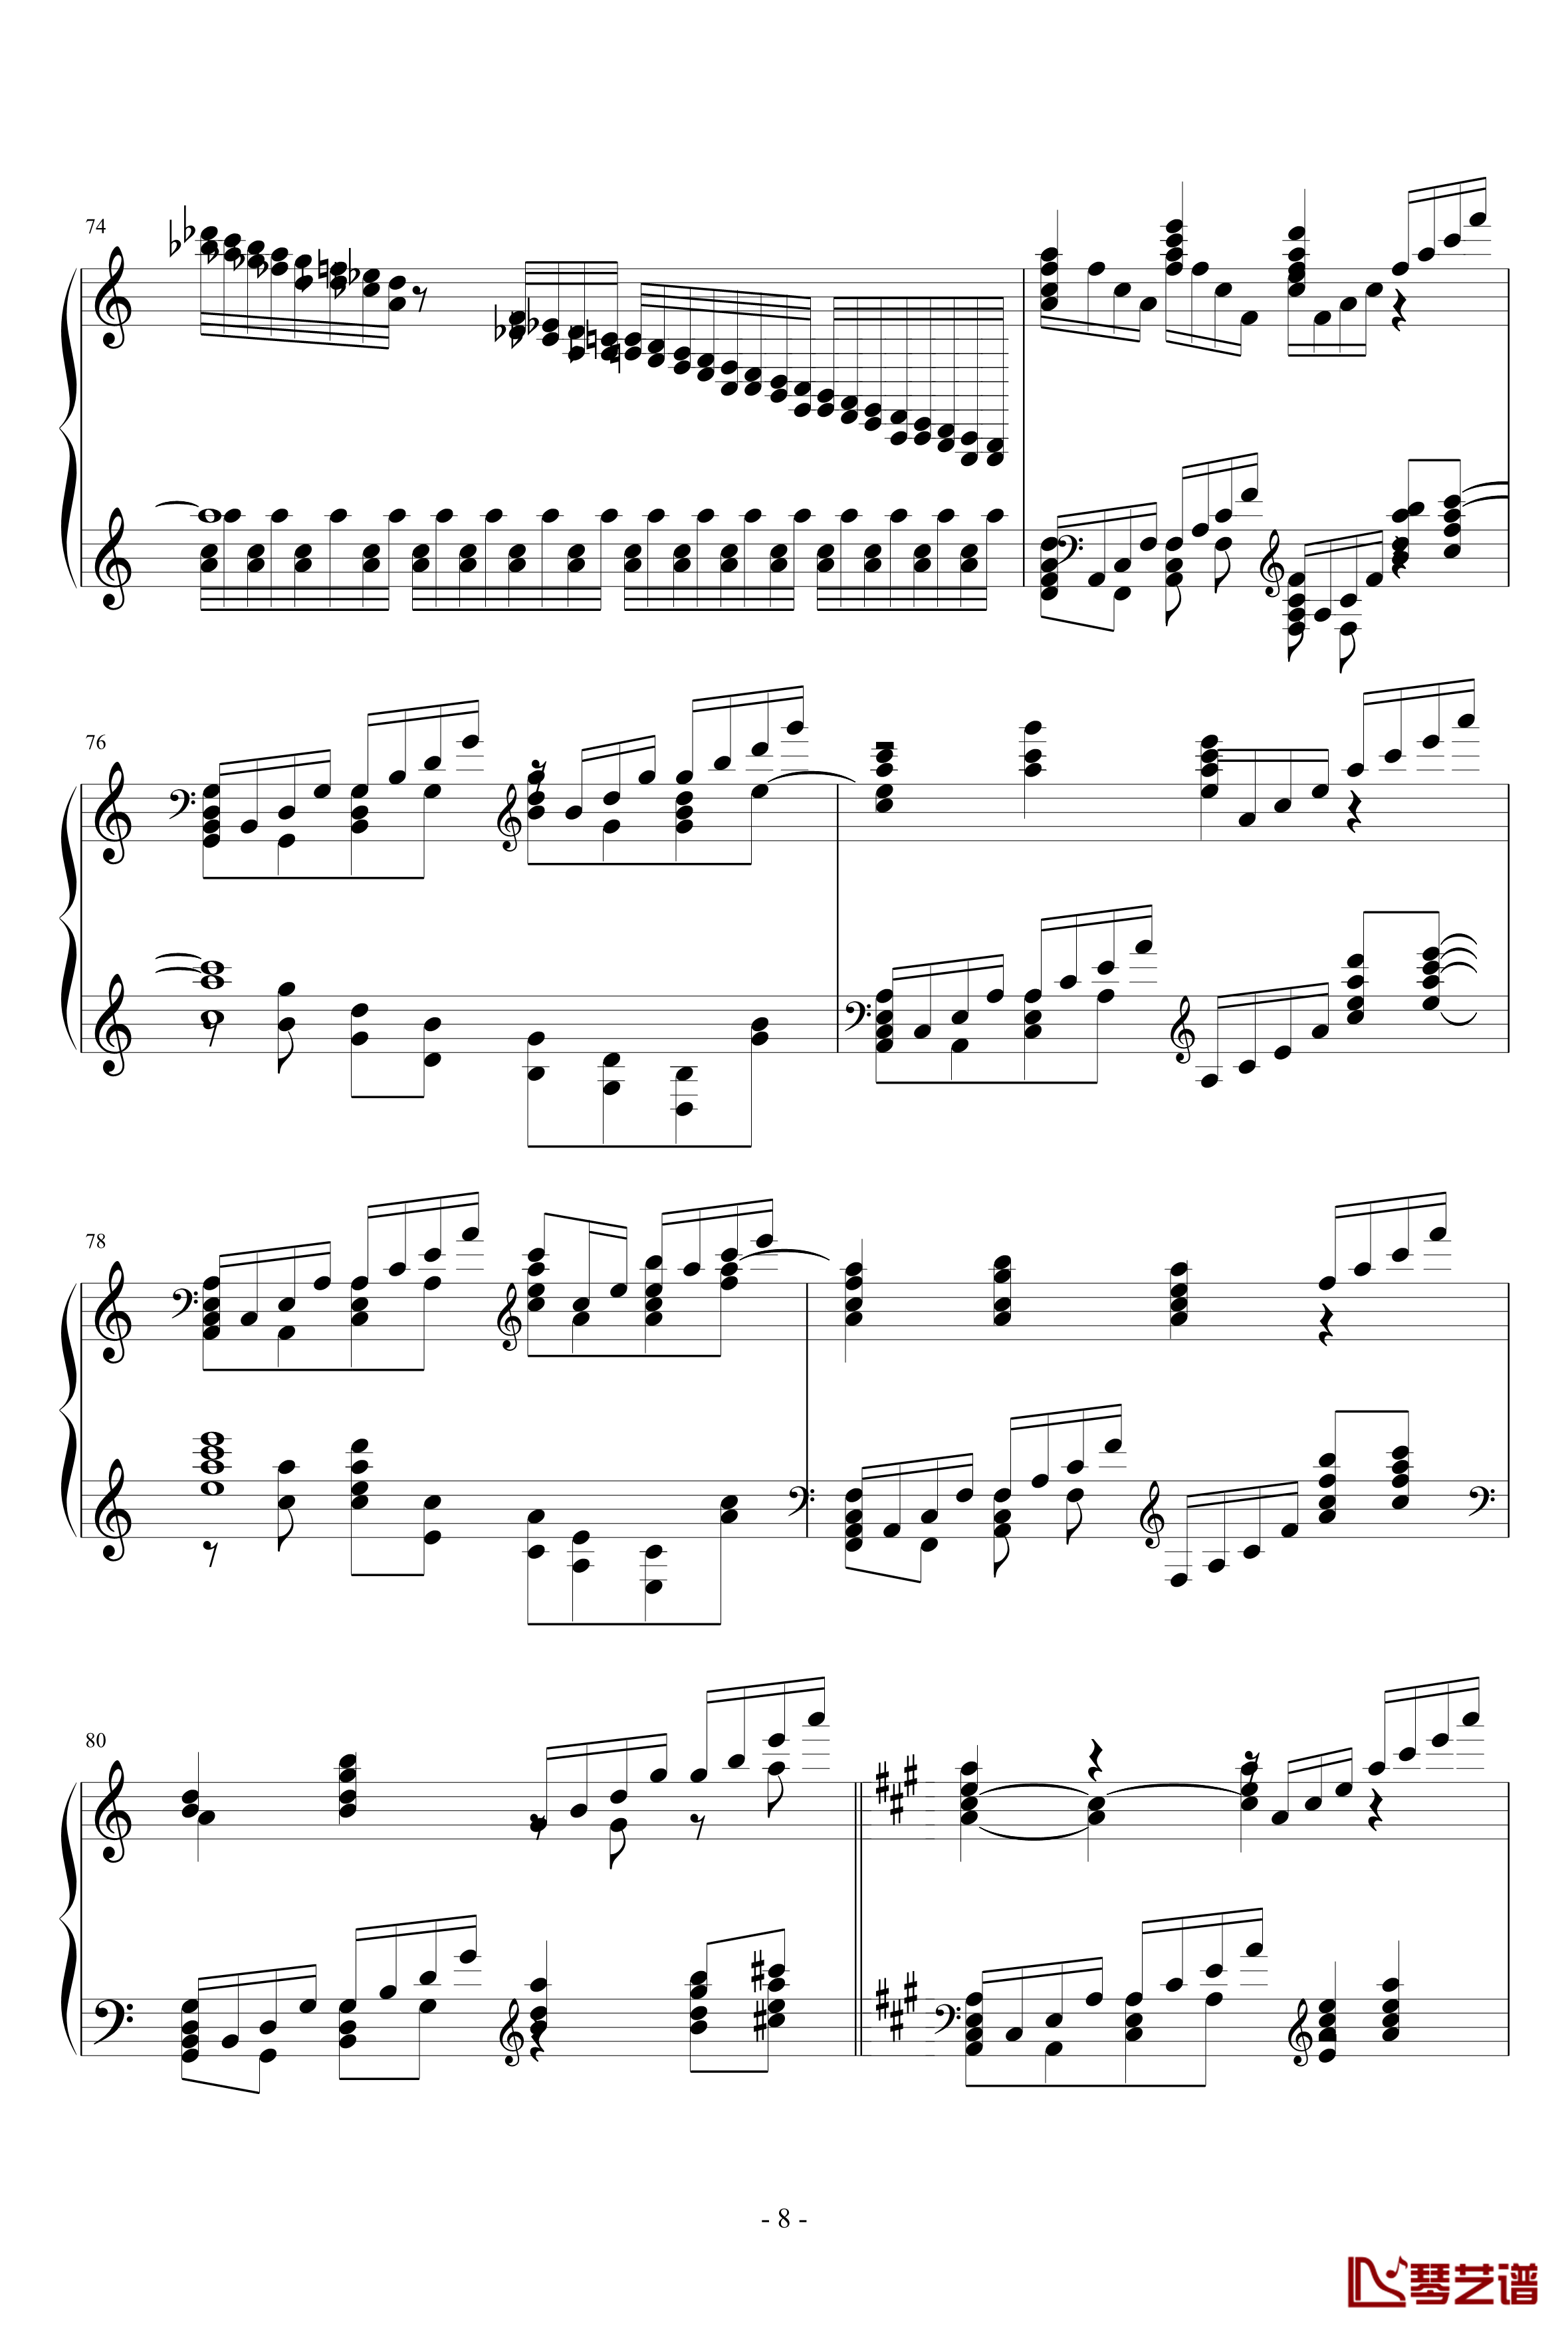 ネクロファンタジア钢琴谱-HARD-八云紫-东方project8